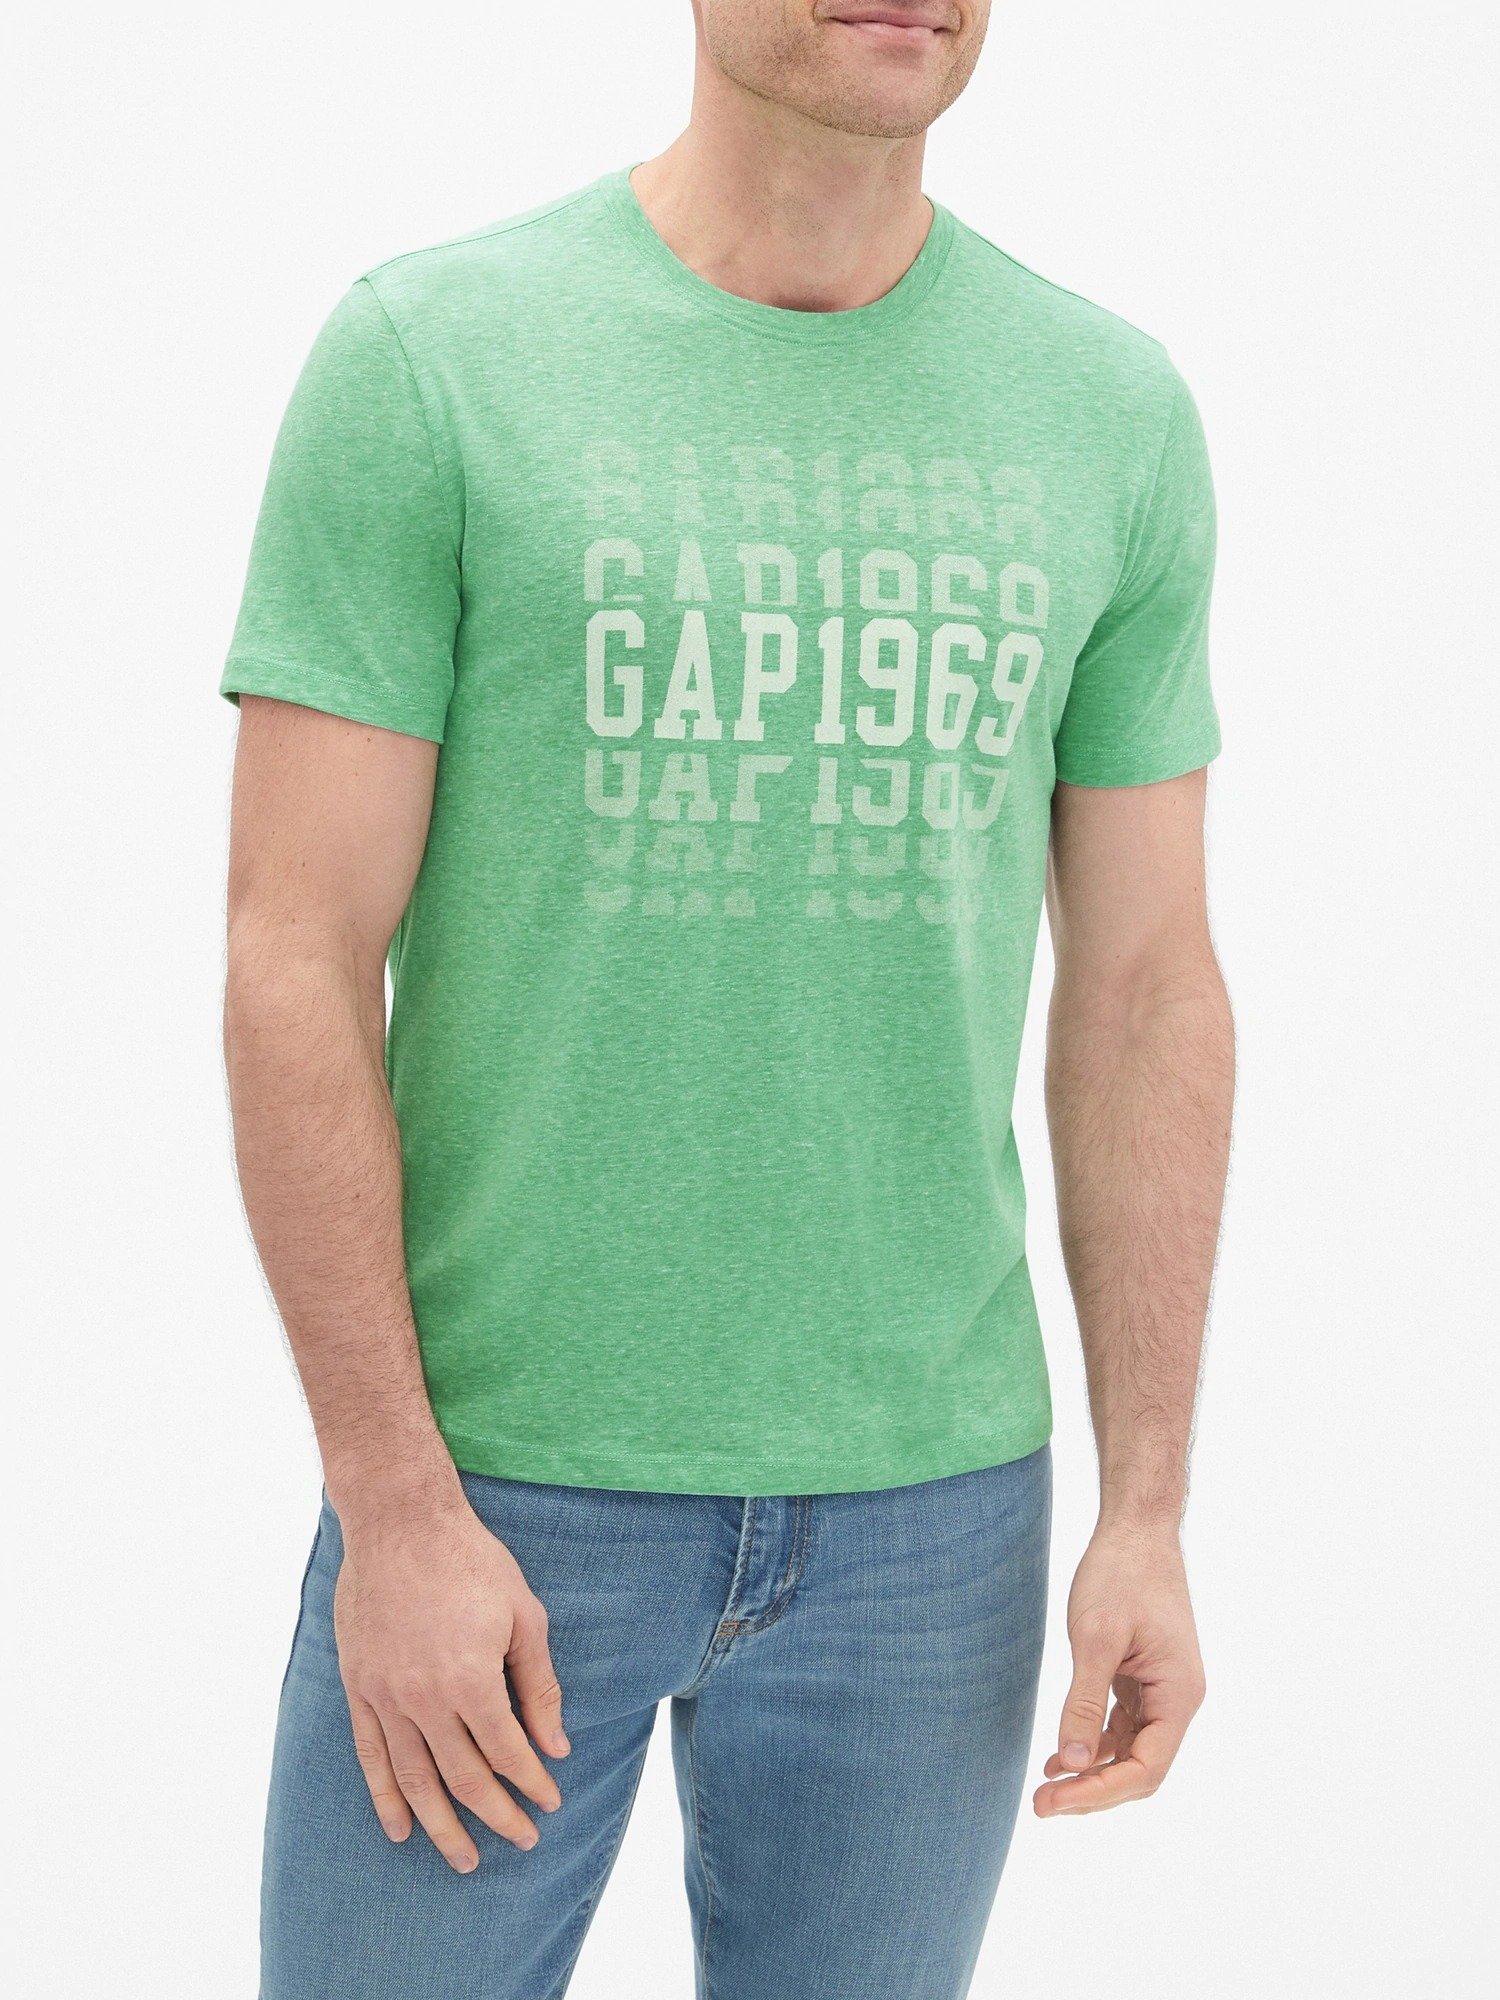 Gap Logo Jarse T-Shirt product image